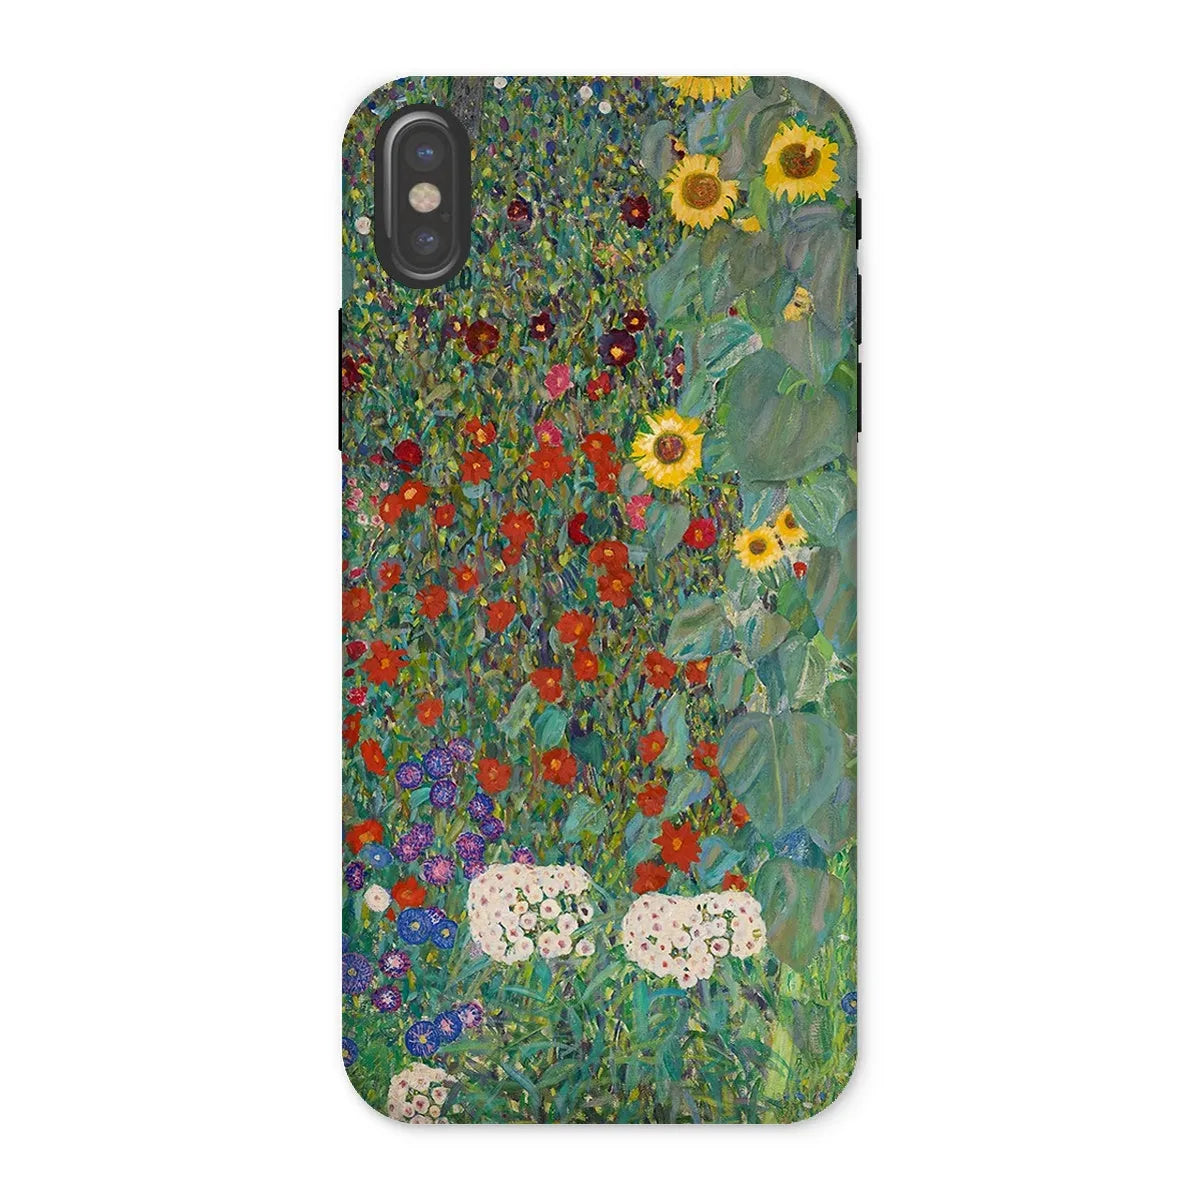 Farm Garden With Sunflowers Art Phone Case - Gustav Klimt - Iphone x / Matte - Mobile Phone Cases - Aesthetic Art